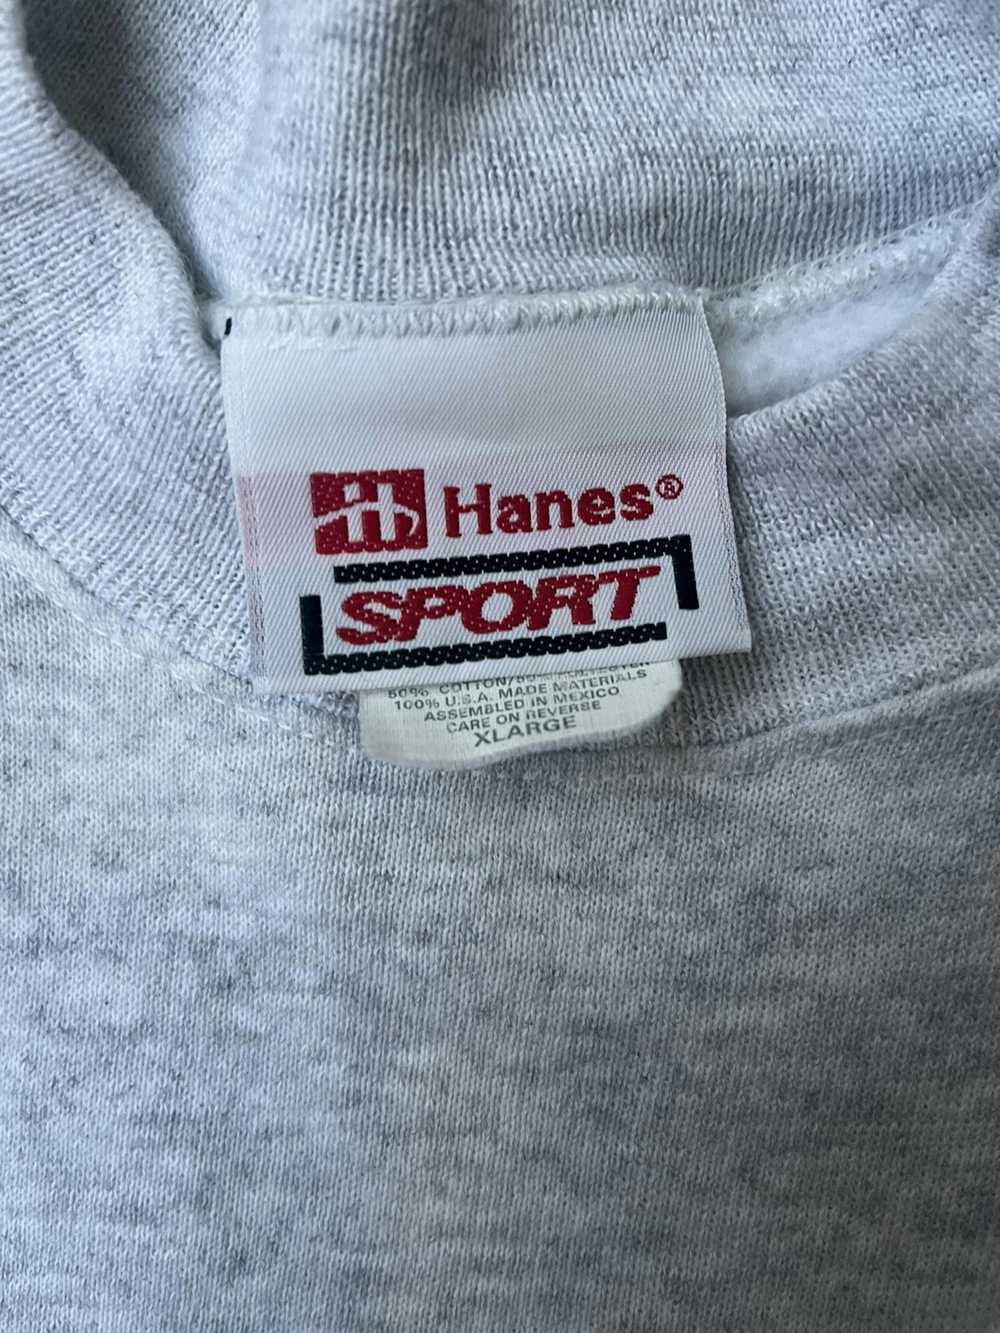 Hanes × Vintage Vintage 60s Hanes sweatshirt - image 2